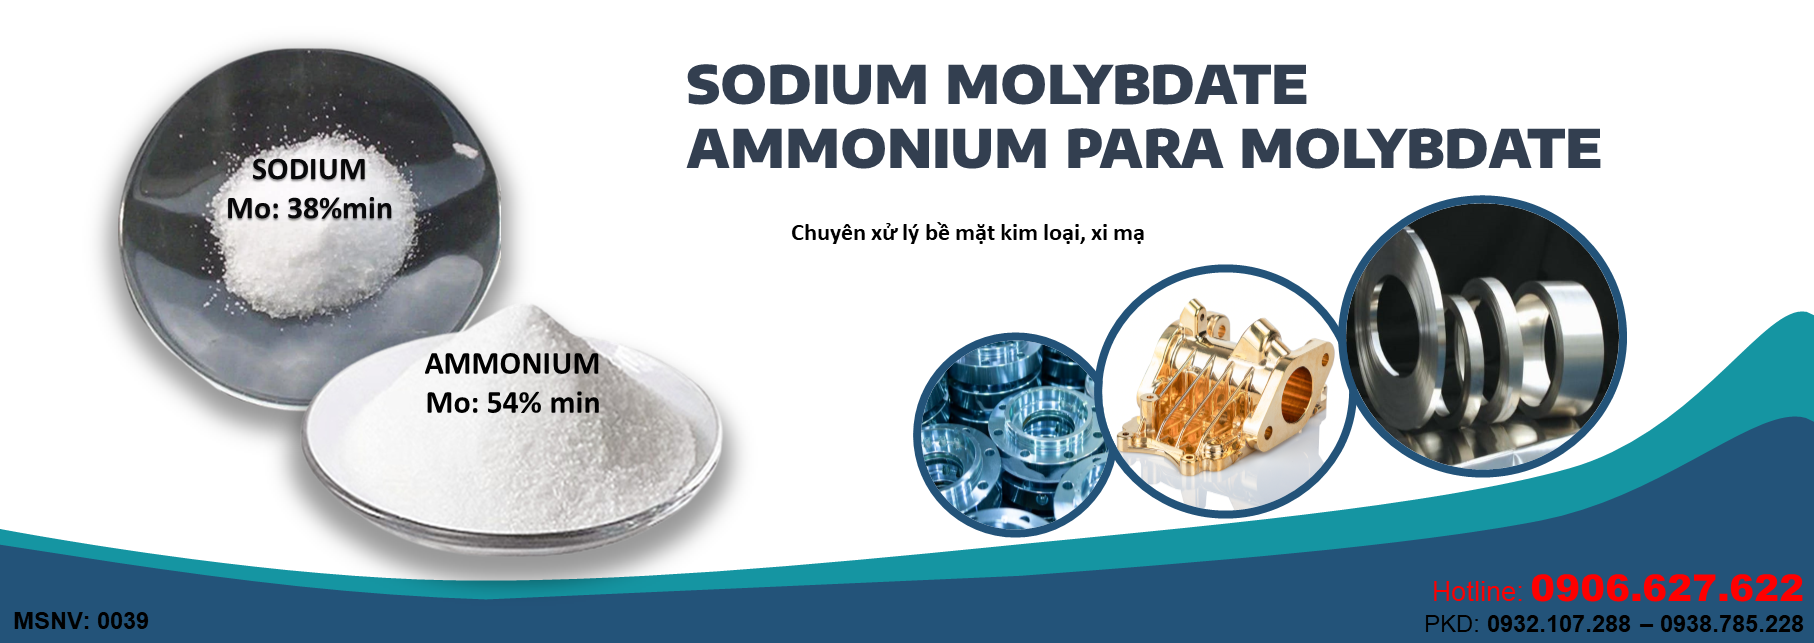 Sodium/Ammonium Para Molybdate